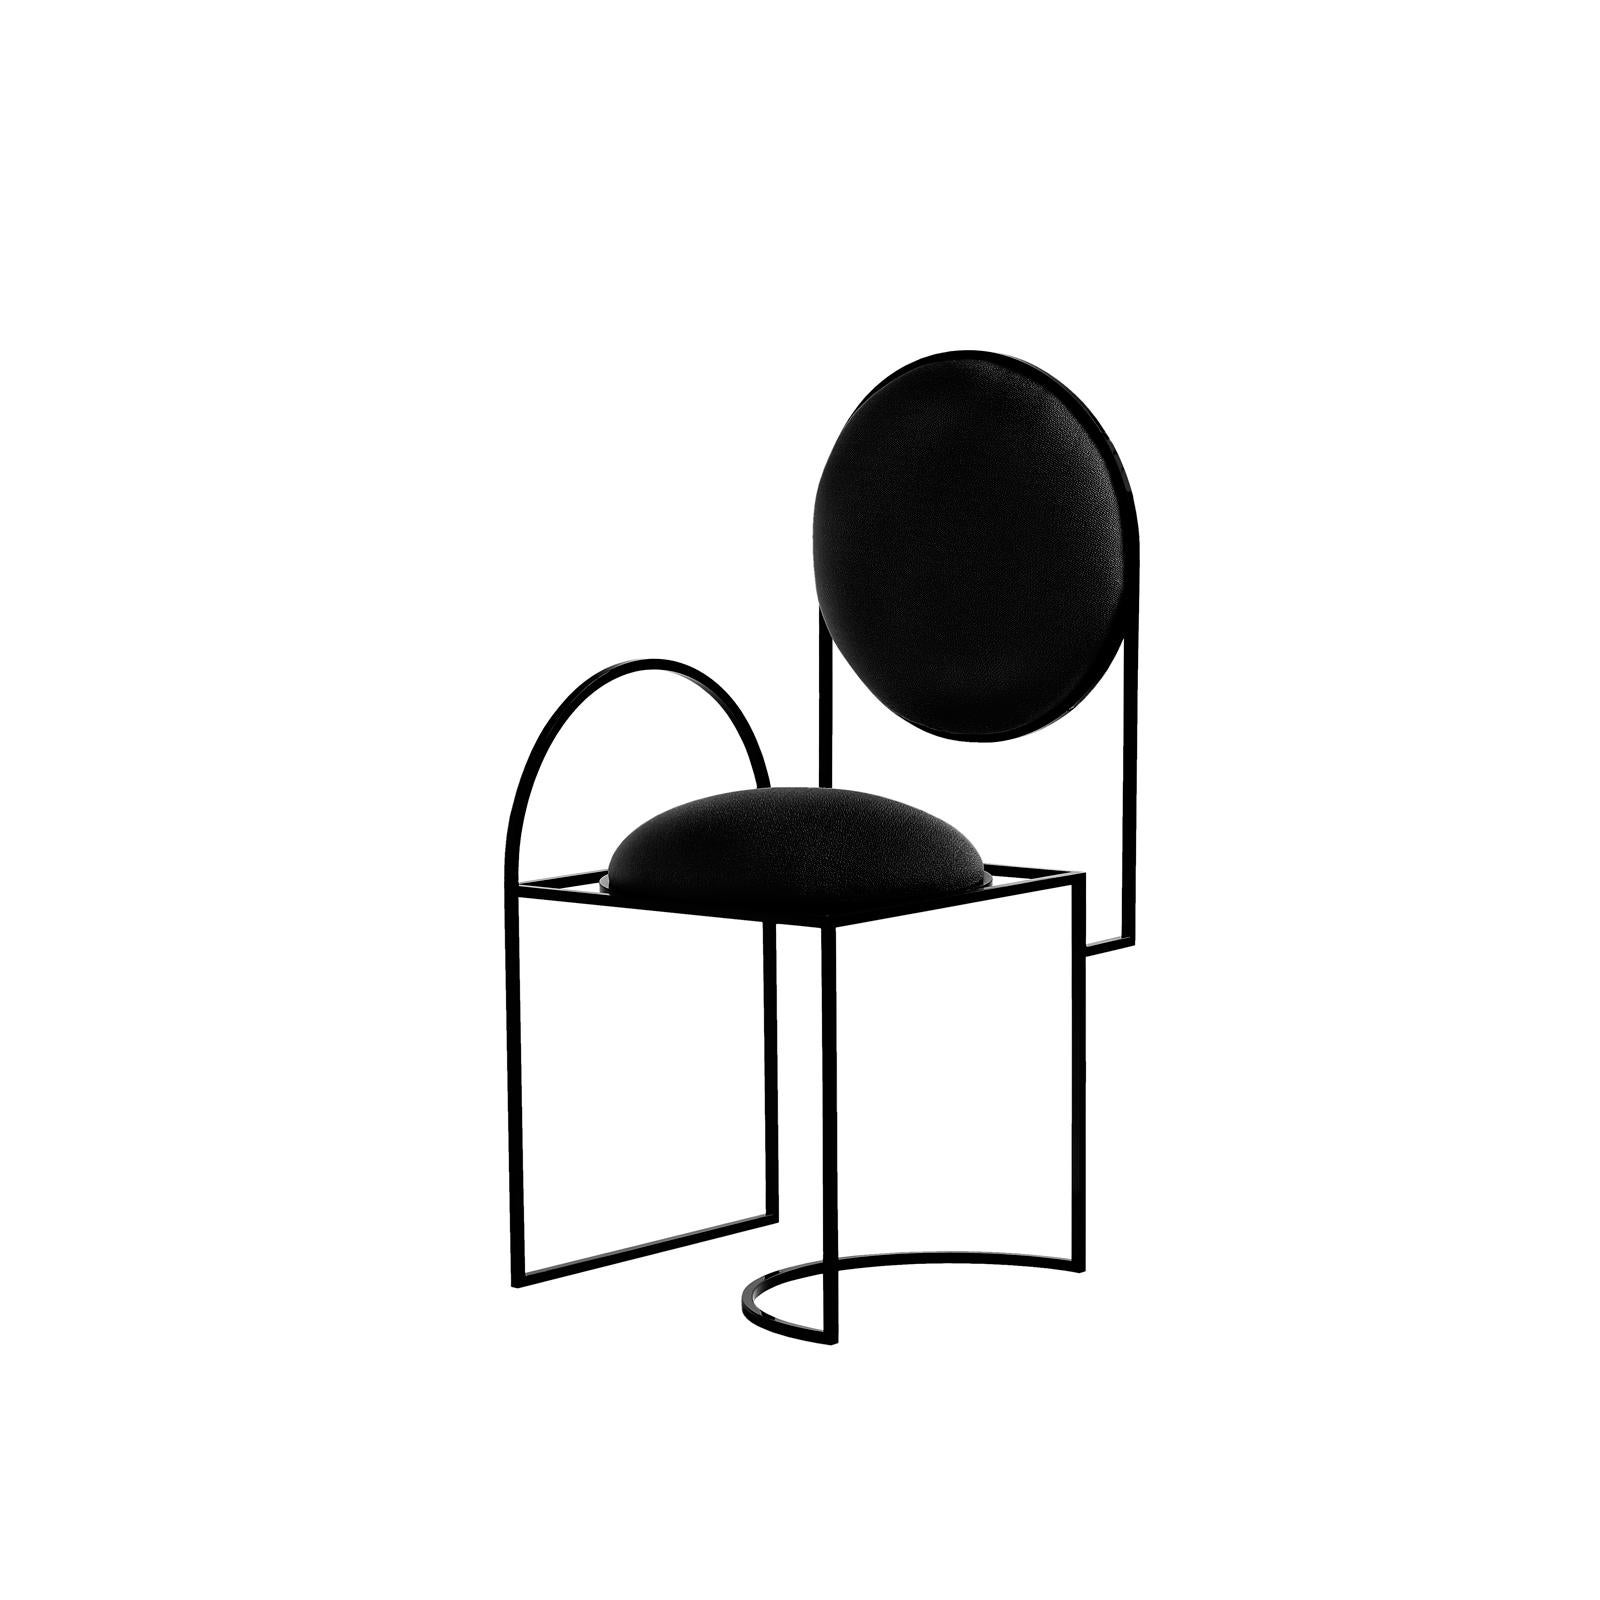 C'est la première fois que Bohinc explore un design favori : la chaise.

Dans cette collection, Lara Bohinc développe ses thèmes stellaires, s'inspirant des orbites planétaires et lunaires, dont les trajectoires gravitationnelles courbes déterminent